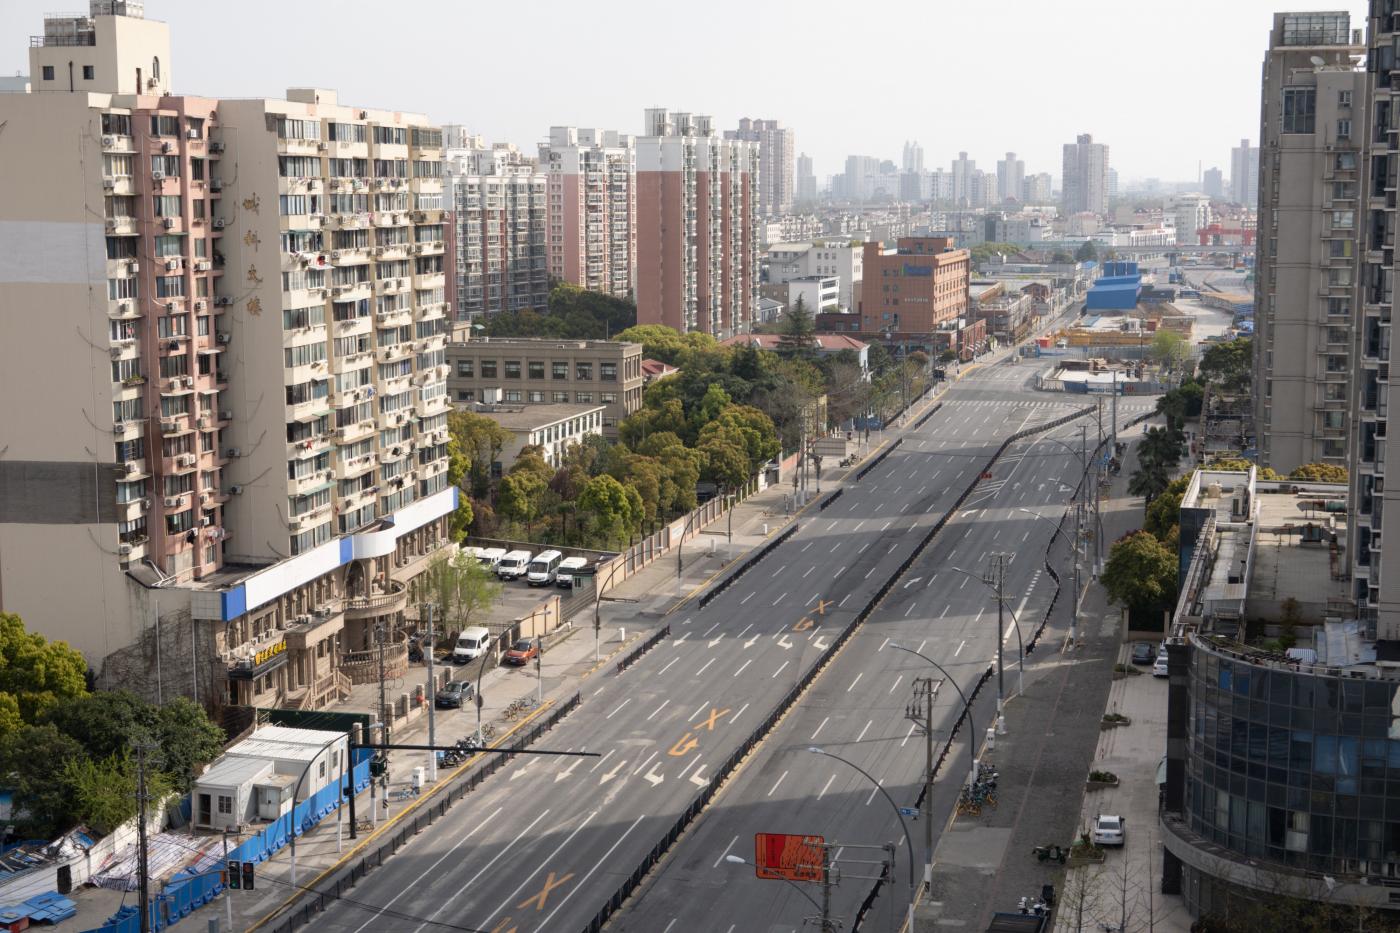 Strade deserte a Shanghai per il nuovo lockdown causa covid